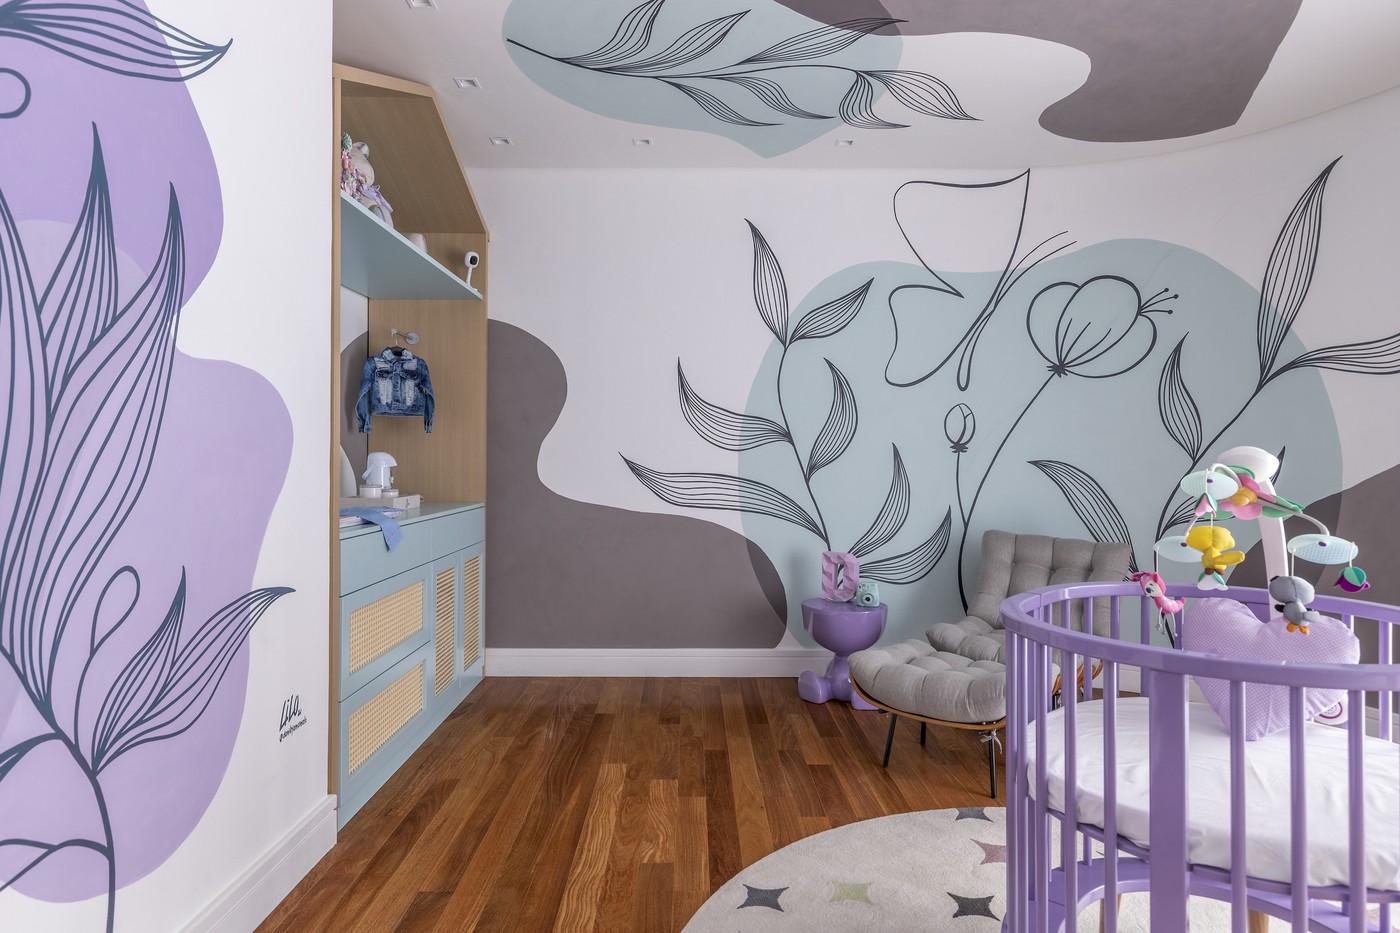 Décor do dia: quarto de bebê cm berço redondo e pintura lúdica (Foto: Kadu Lopes)